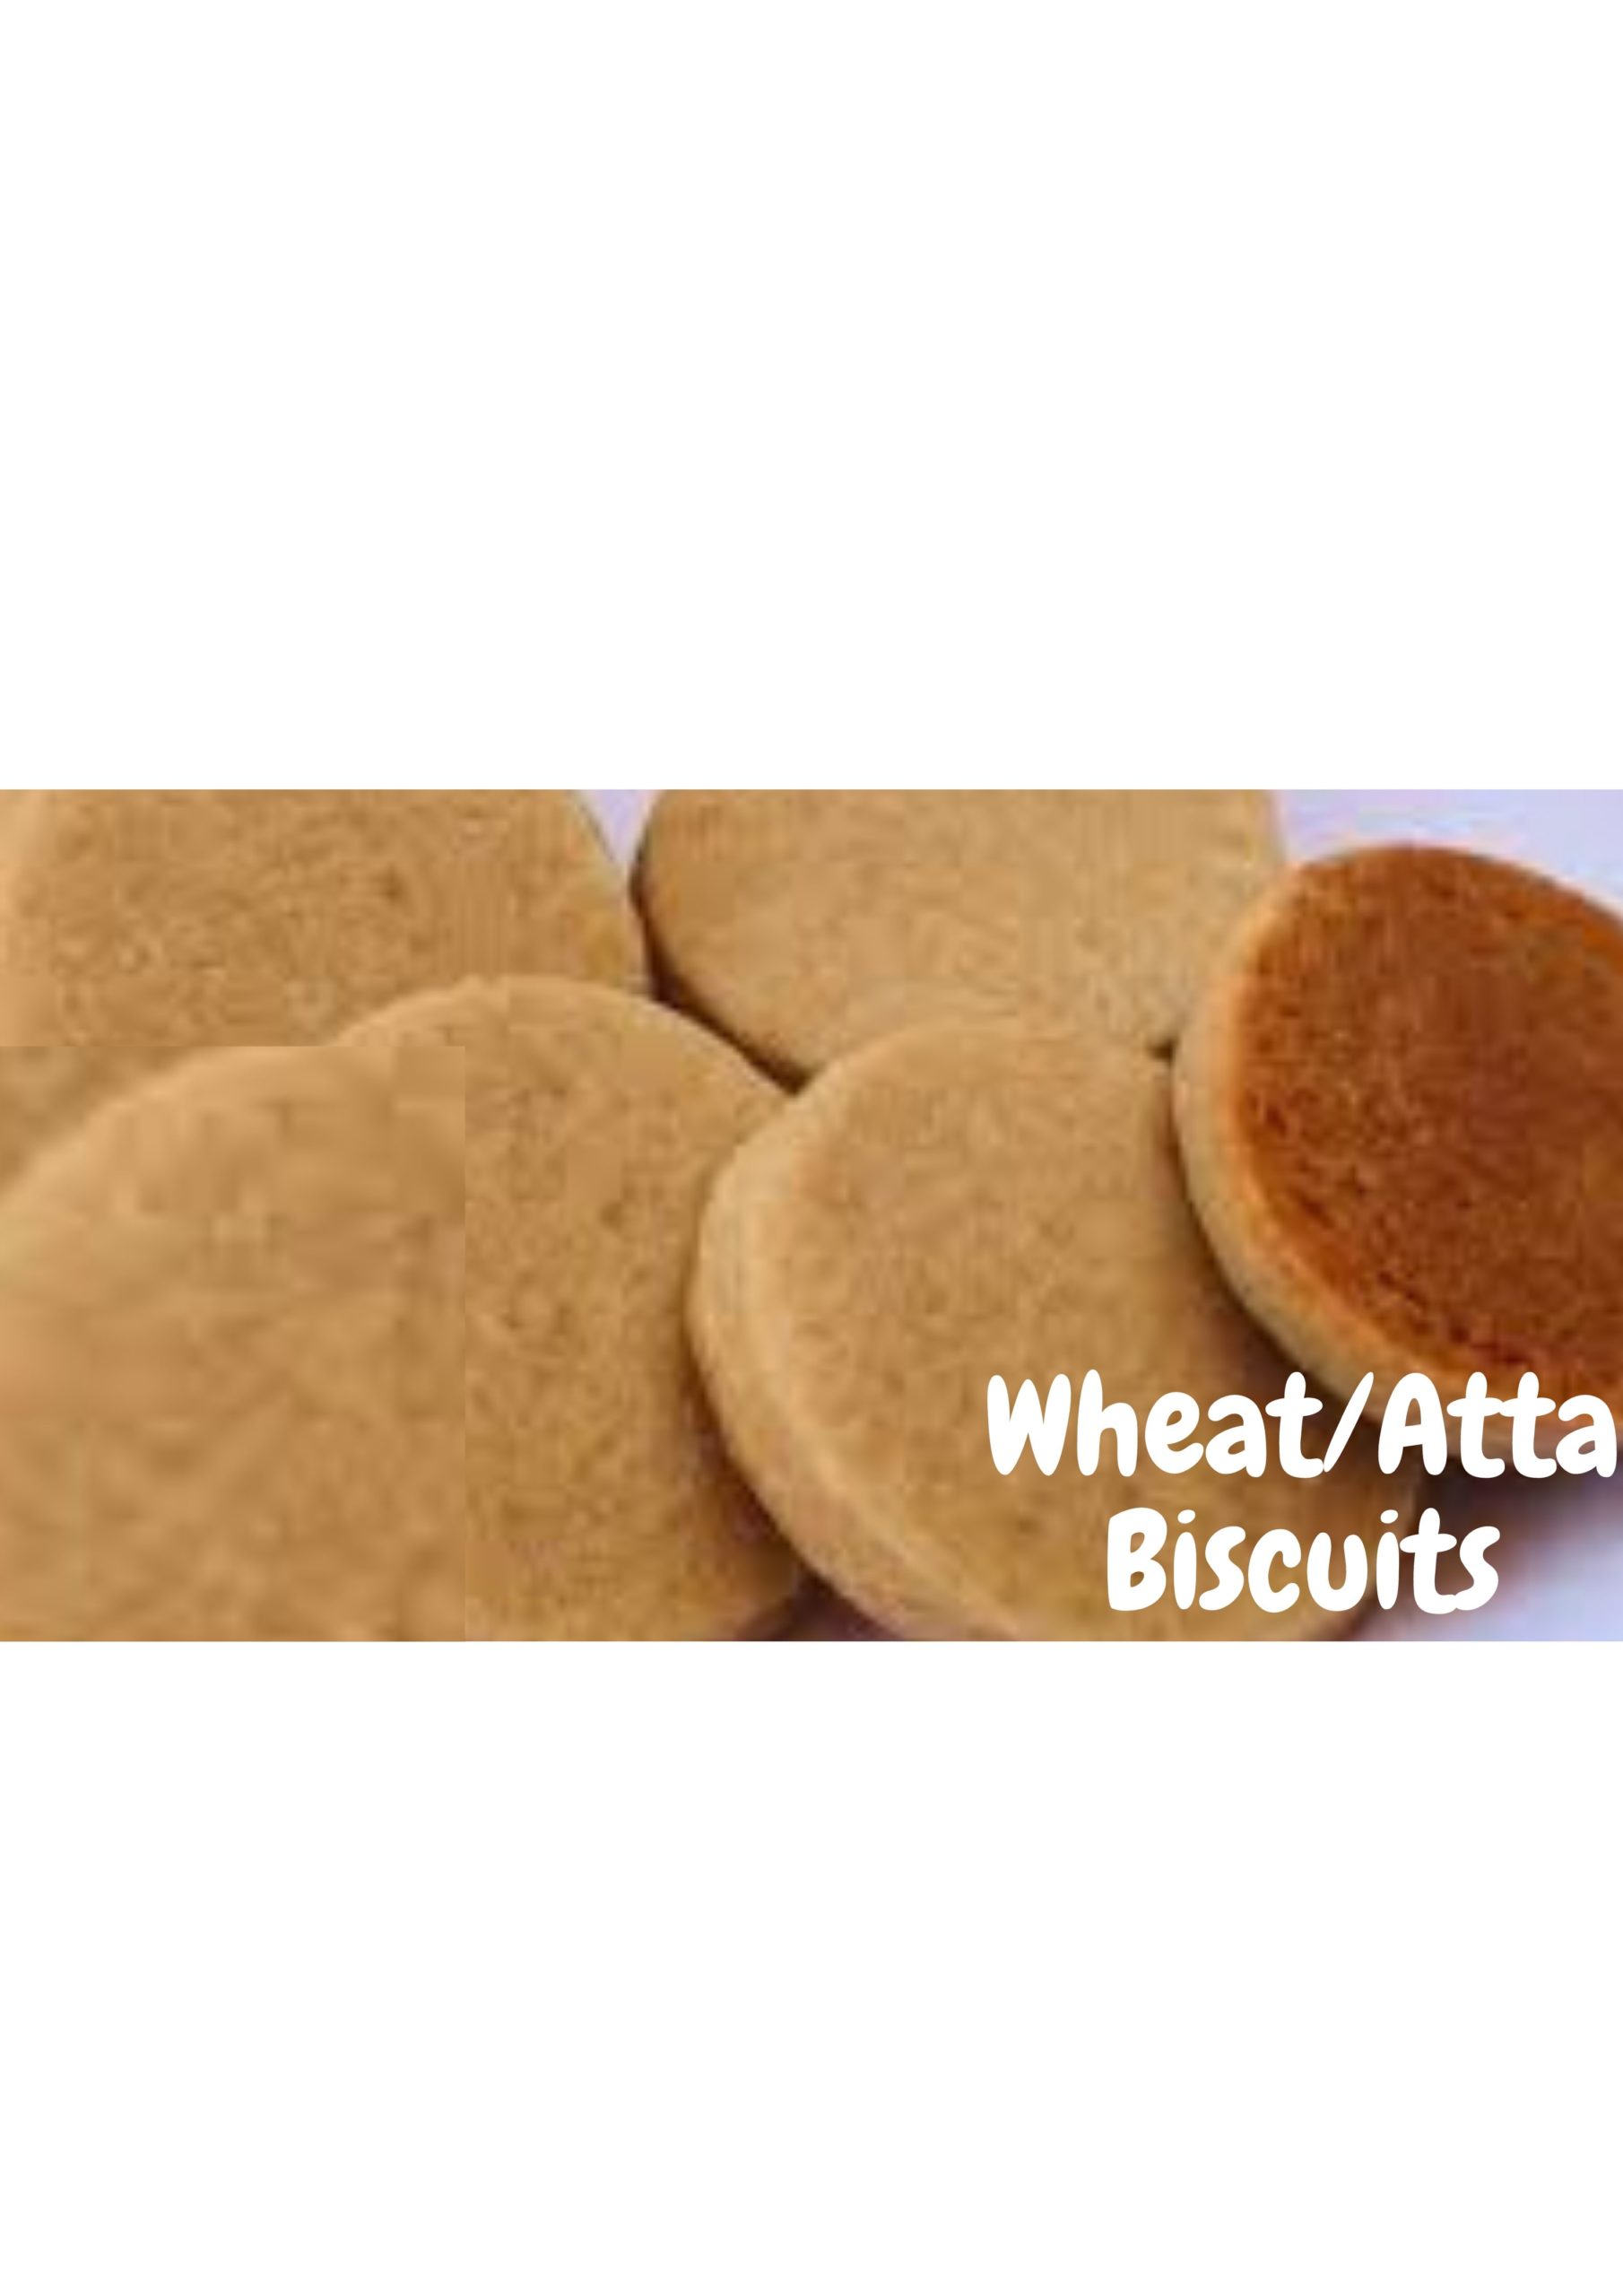 Wheat/ atta biscuits